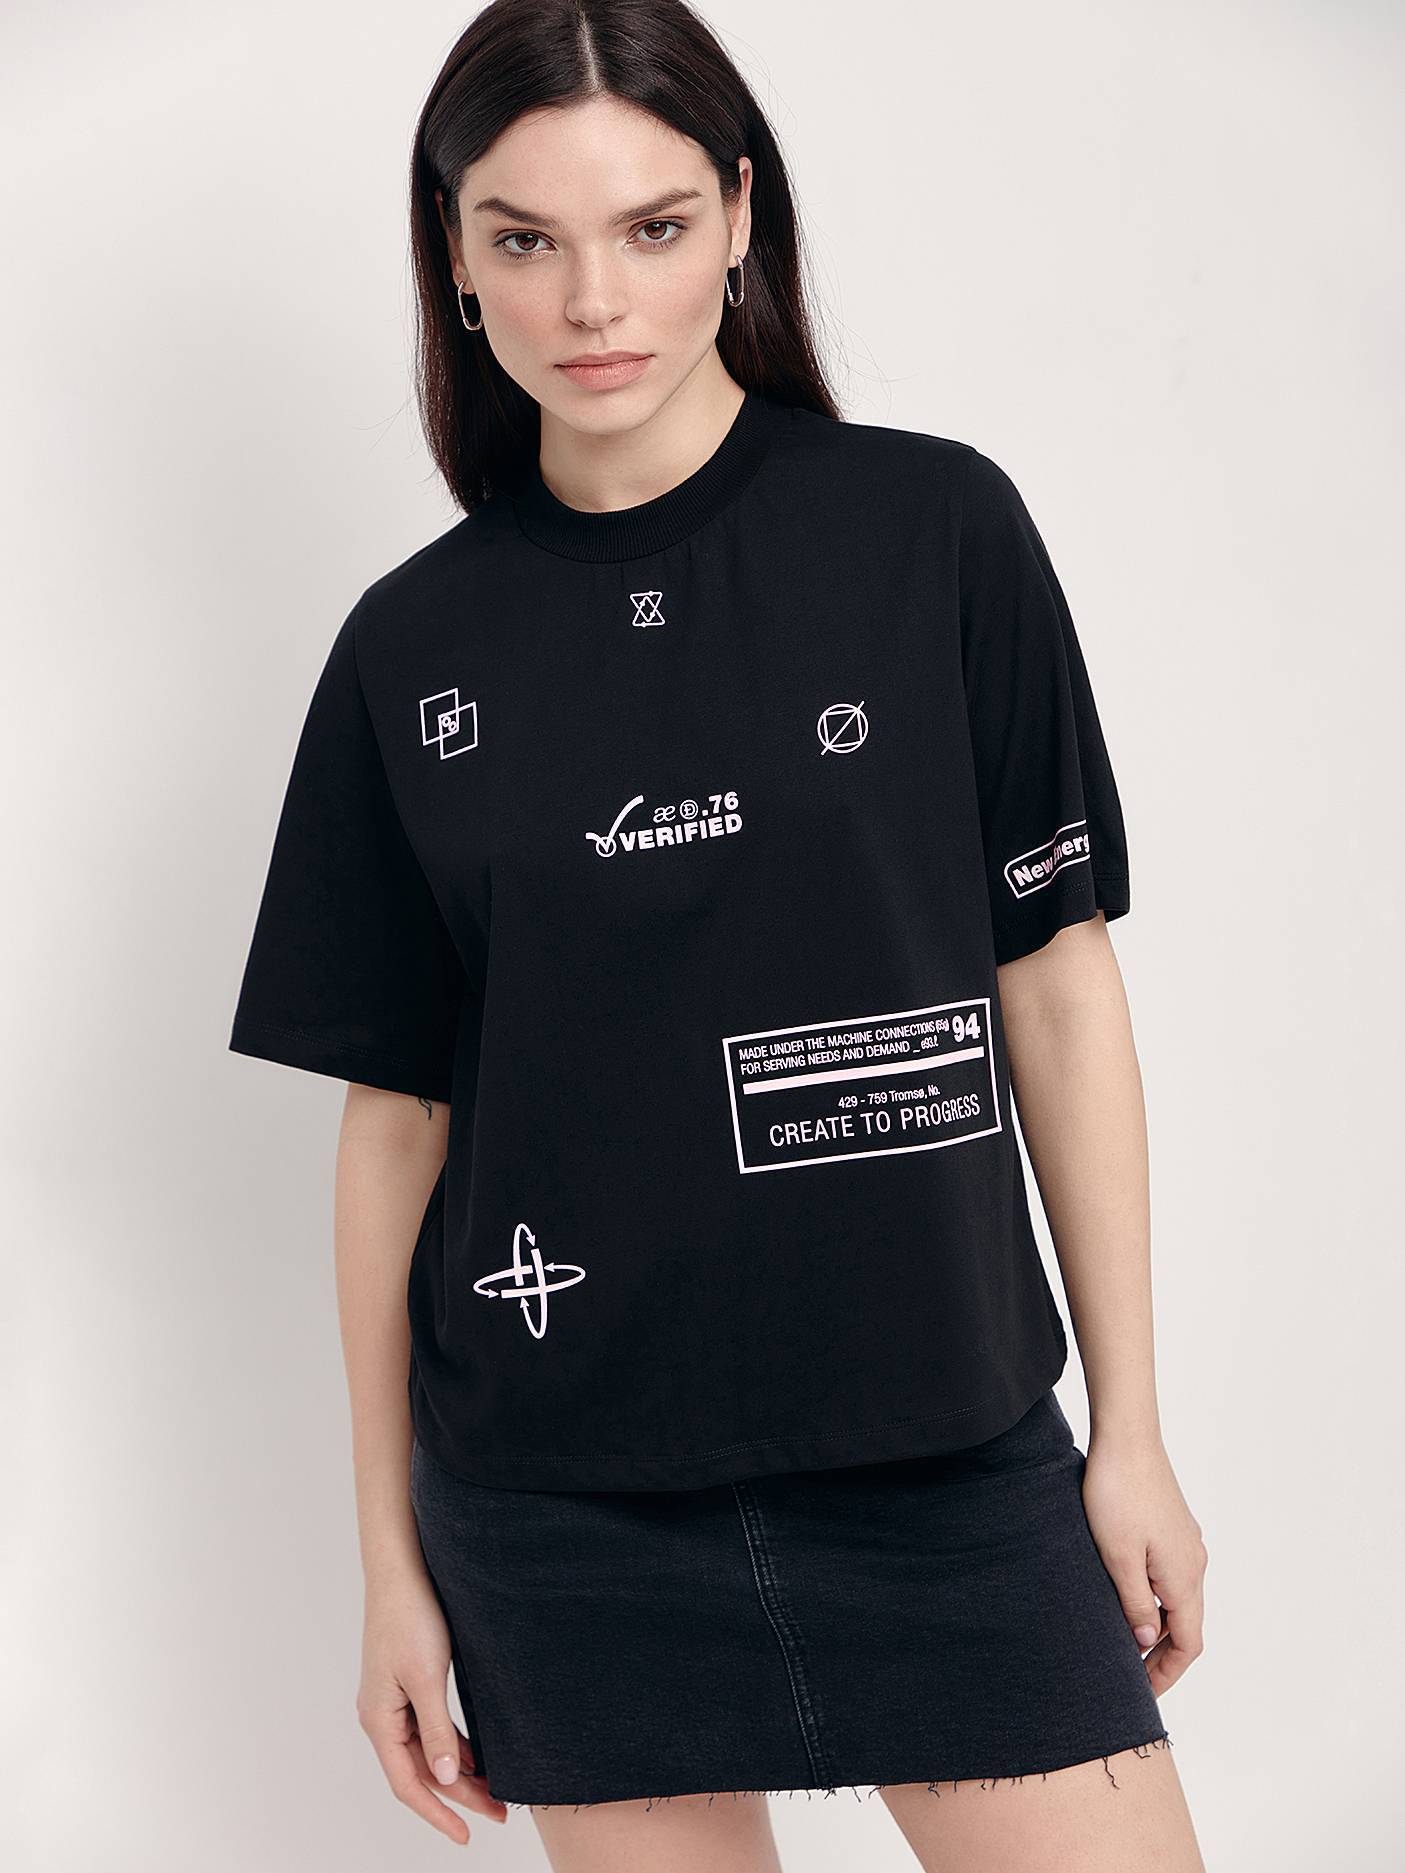 Свободная футболка из хлопка «Verified» LD 1654 Conte ⭐️, цвет black, размер 170-84/xs